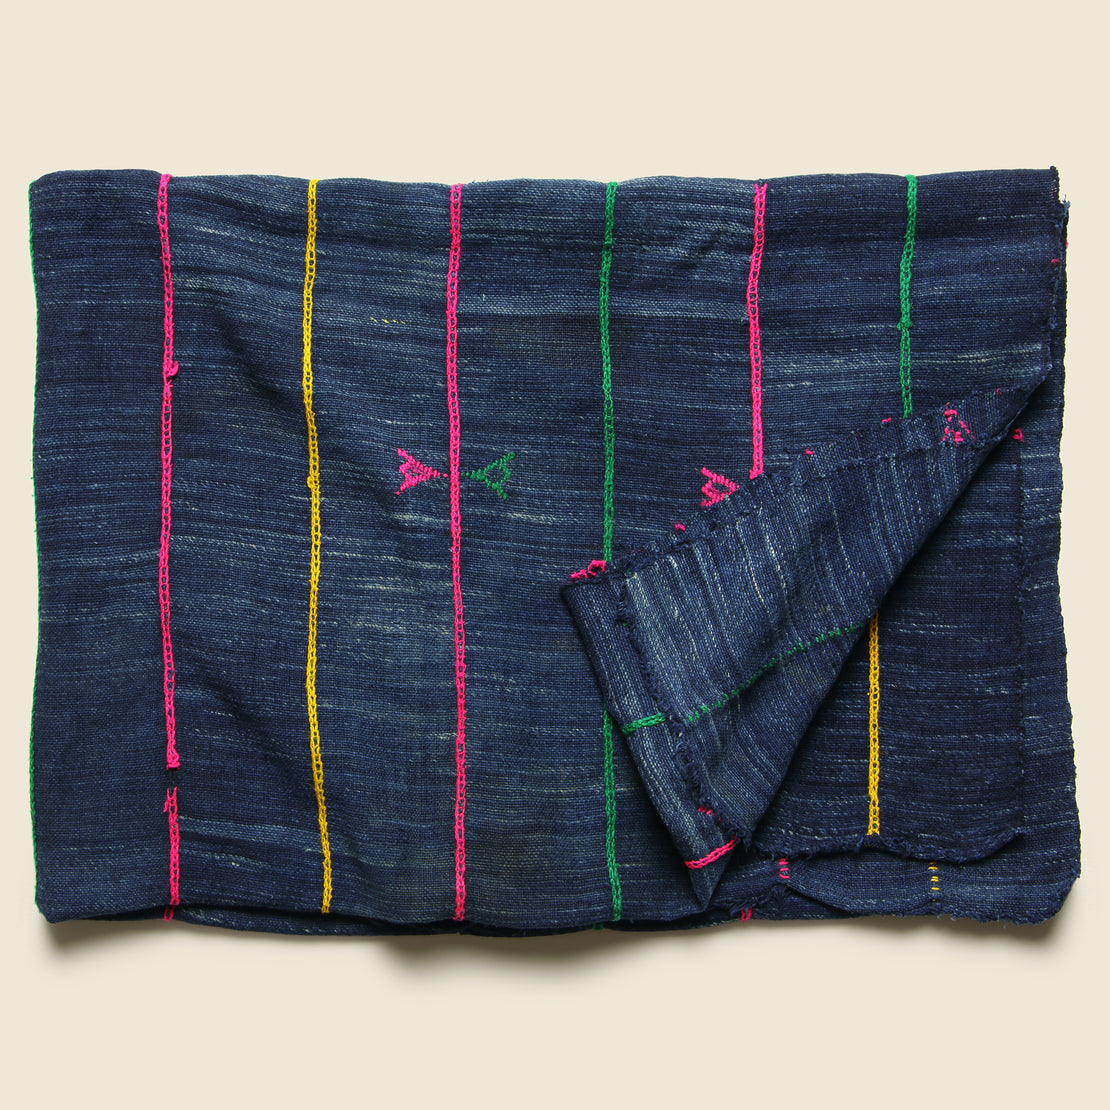 Vintage African Indigo Textile - Bright Stitching